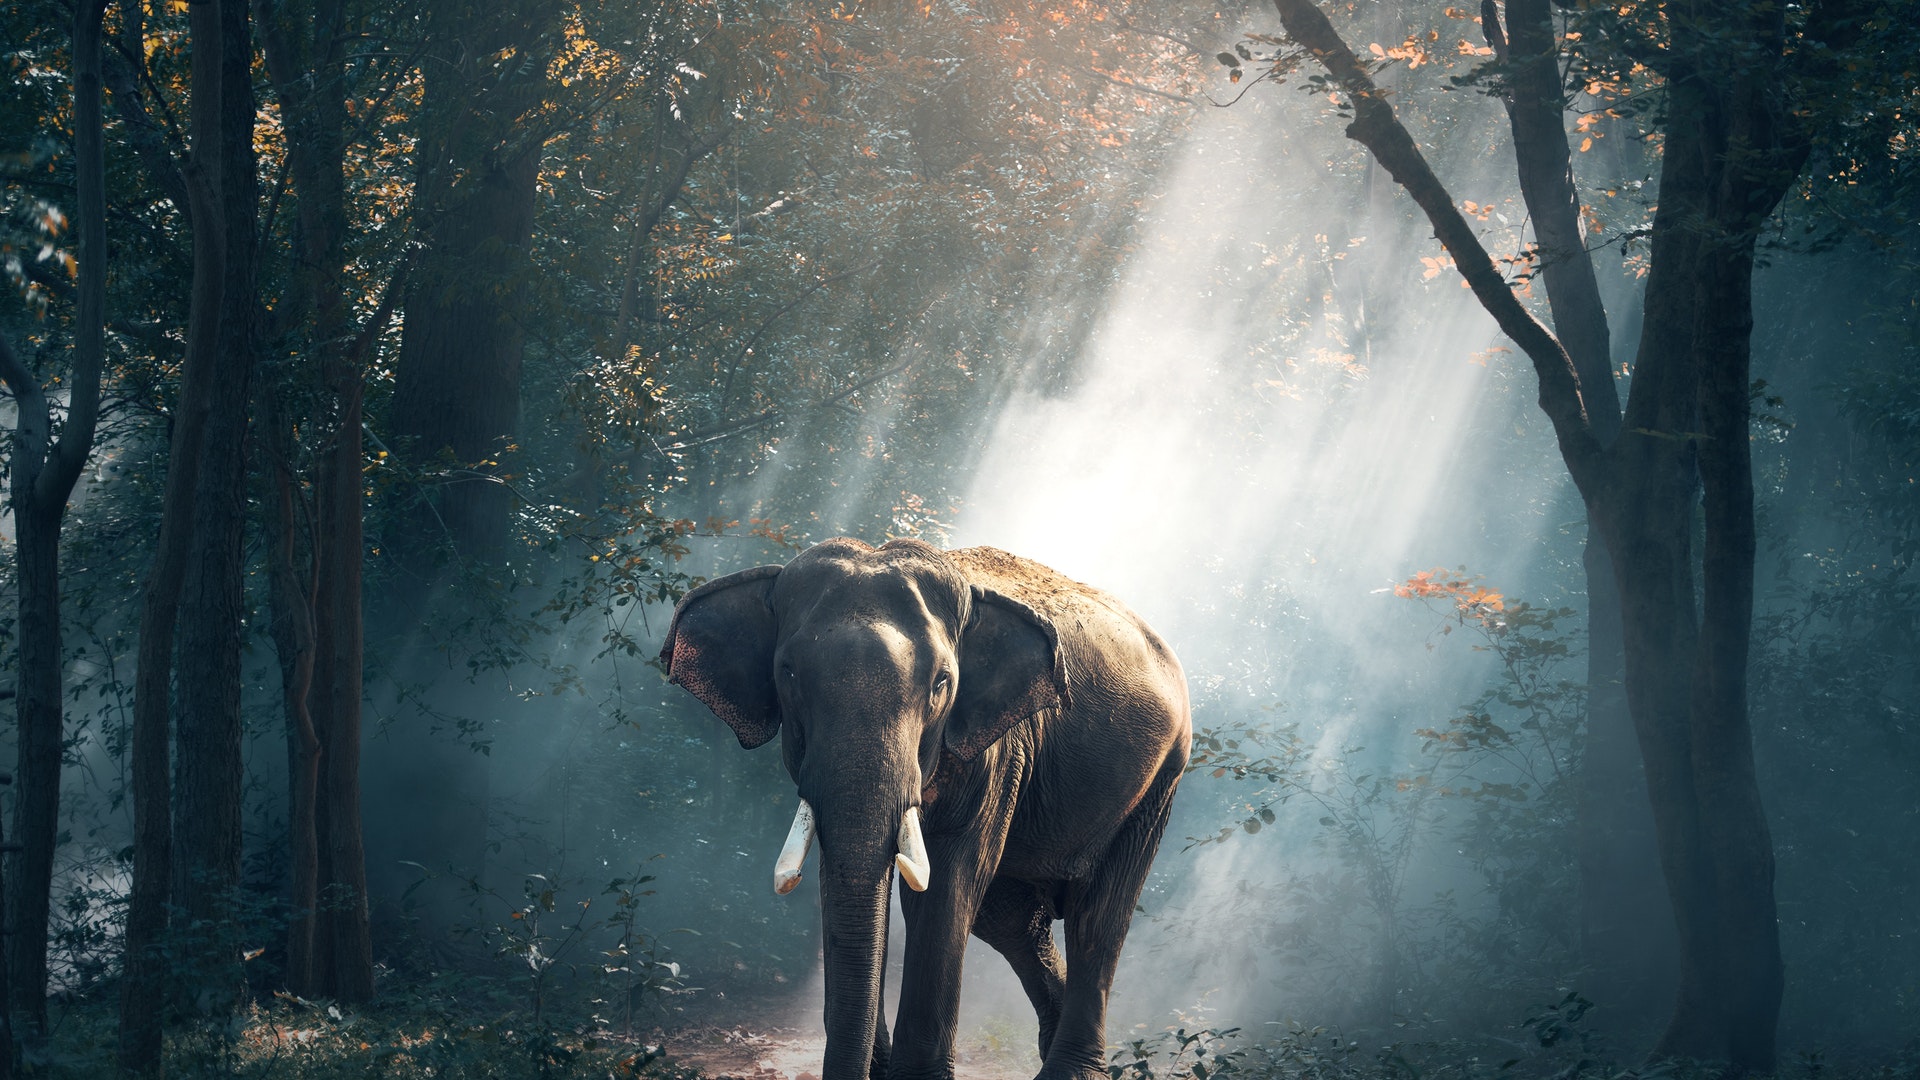 Elephants in Jungle